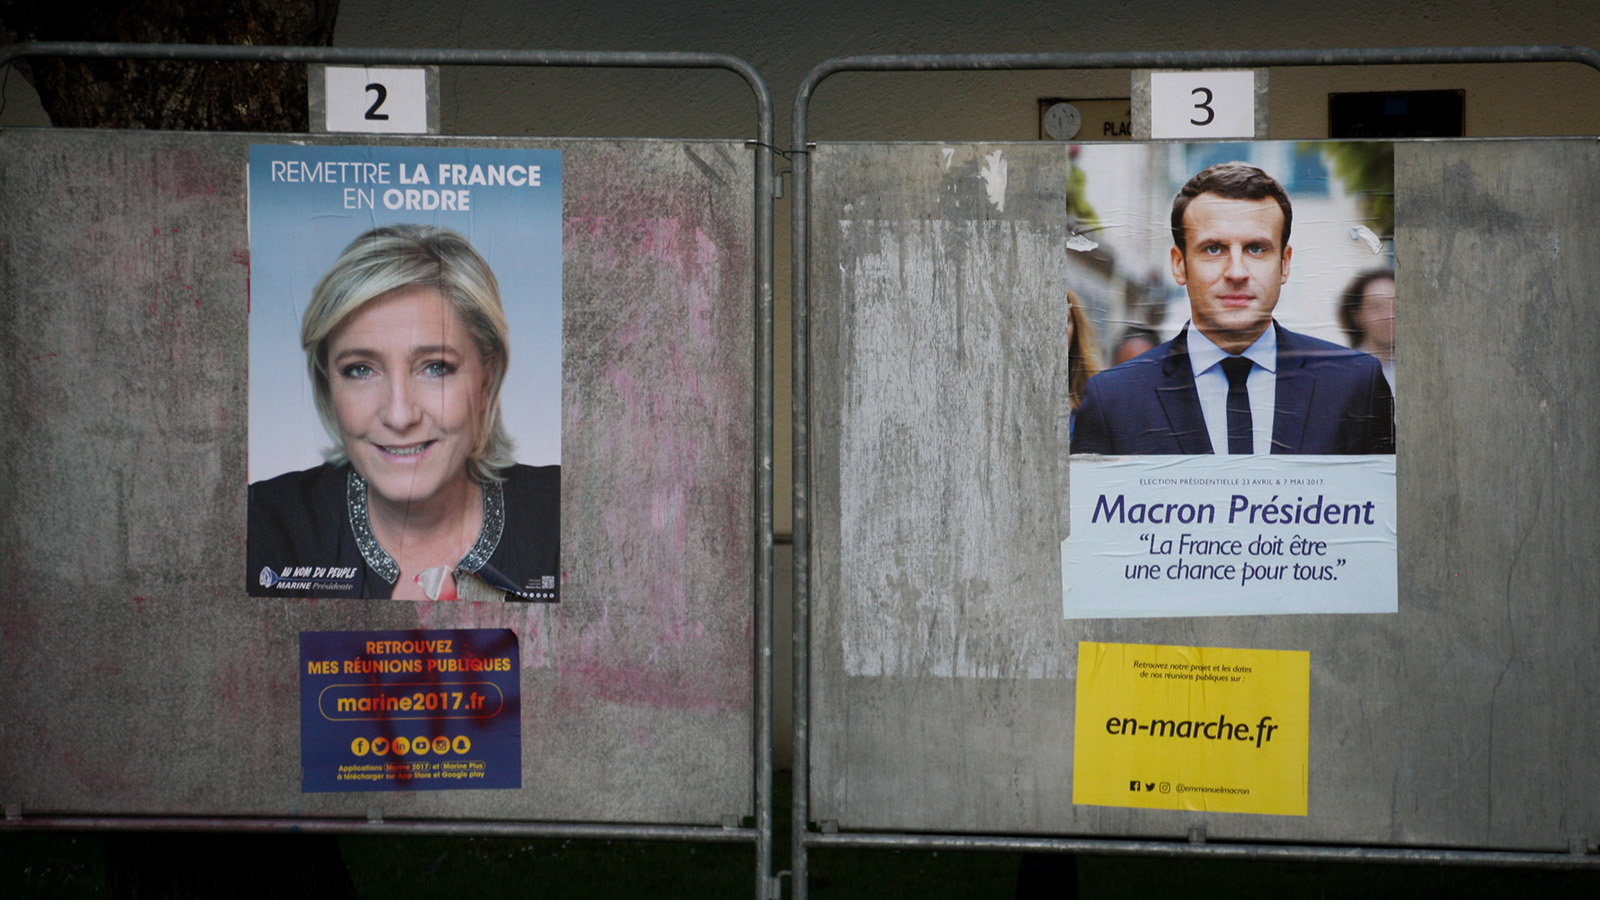 כרזות של המועמדים עמנואל מקרון ומרי לה פן מחוץ לתחנת קלפיות בצרפת (צילום: מריון זינדל / פלאש 90).